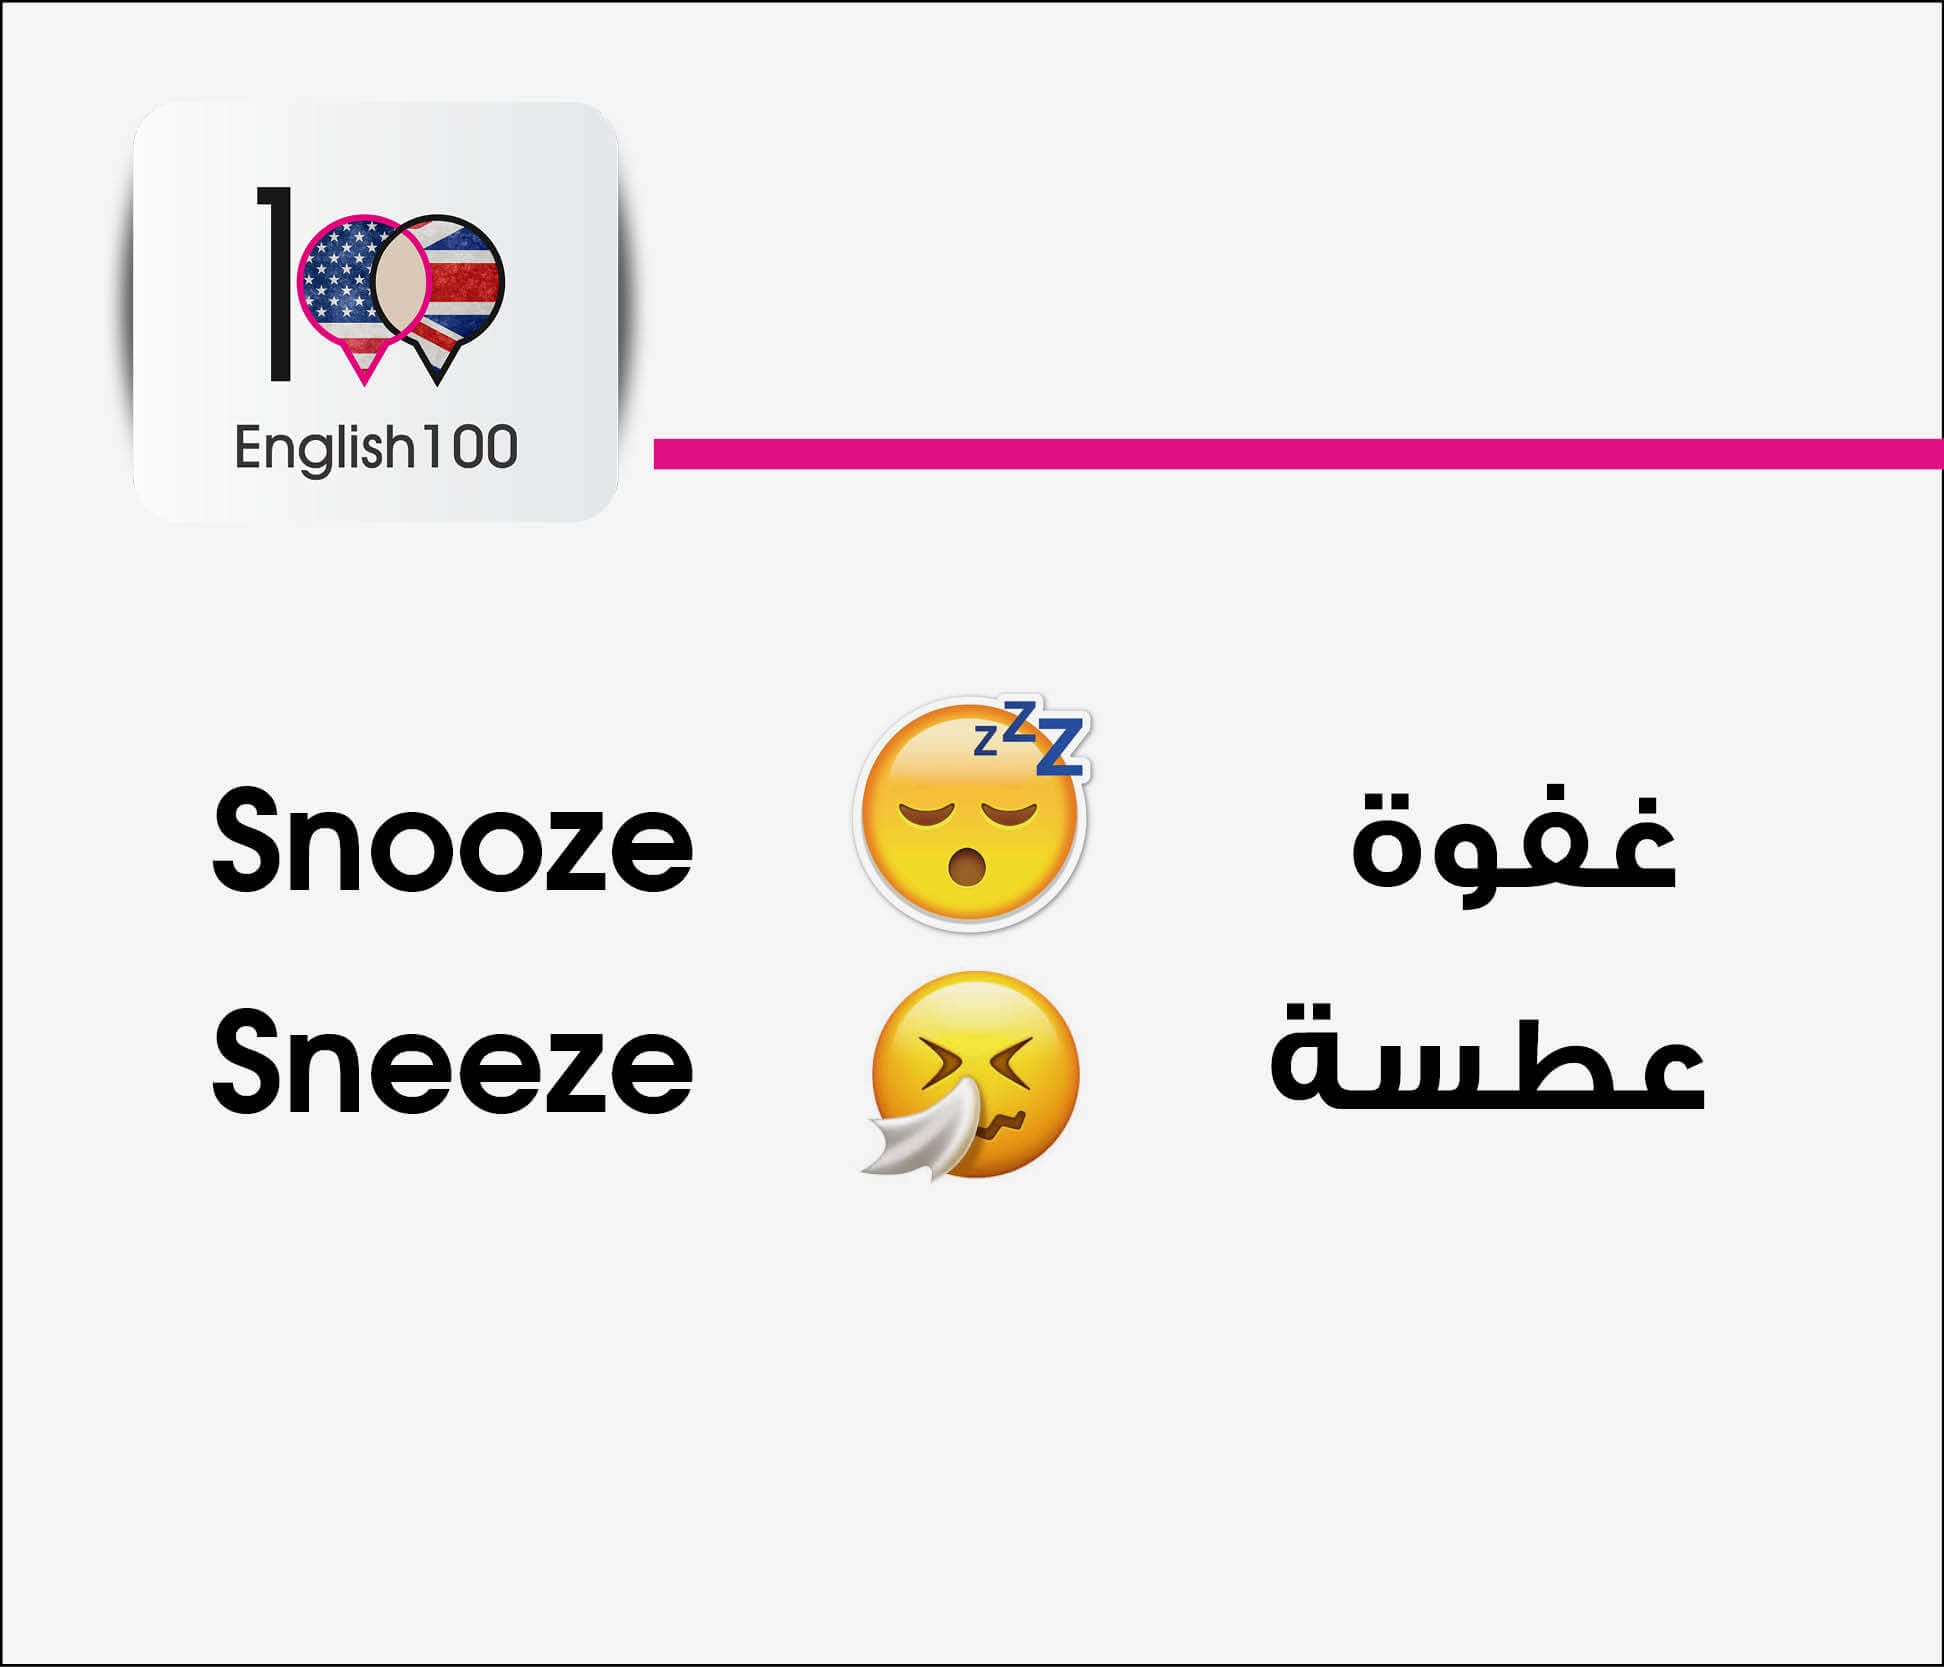 ما الفرق بين Snooze and Sneeze في الانجليزية.